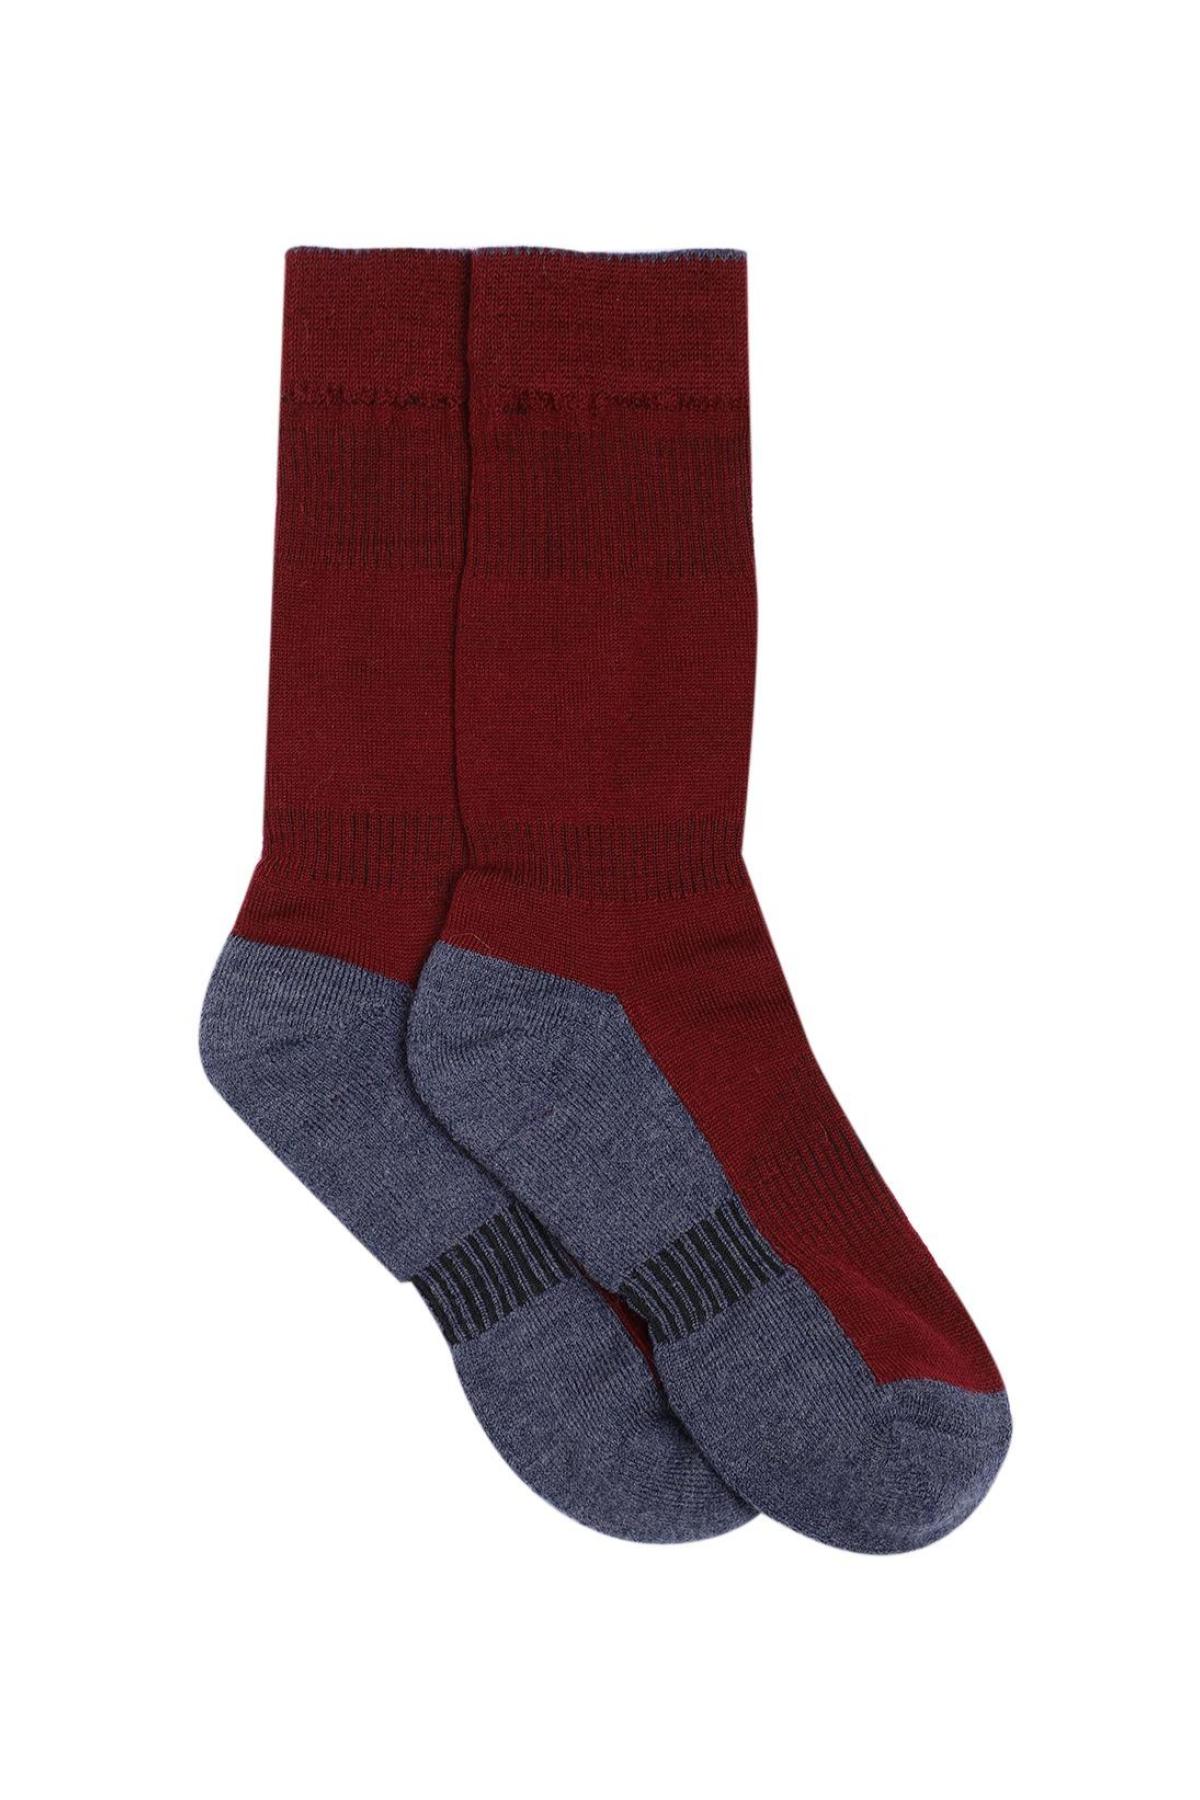 Namik No Blister Merino Wool Maroon-Grey Regular Socks | Men